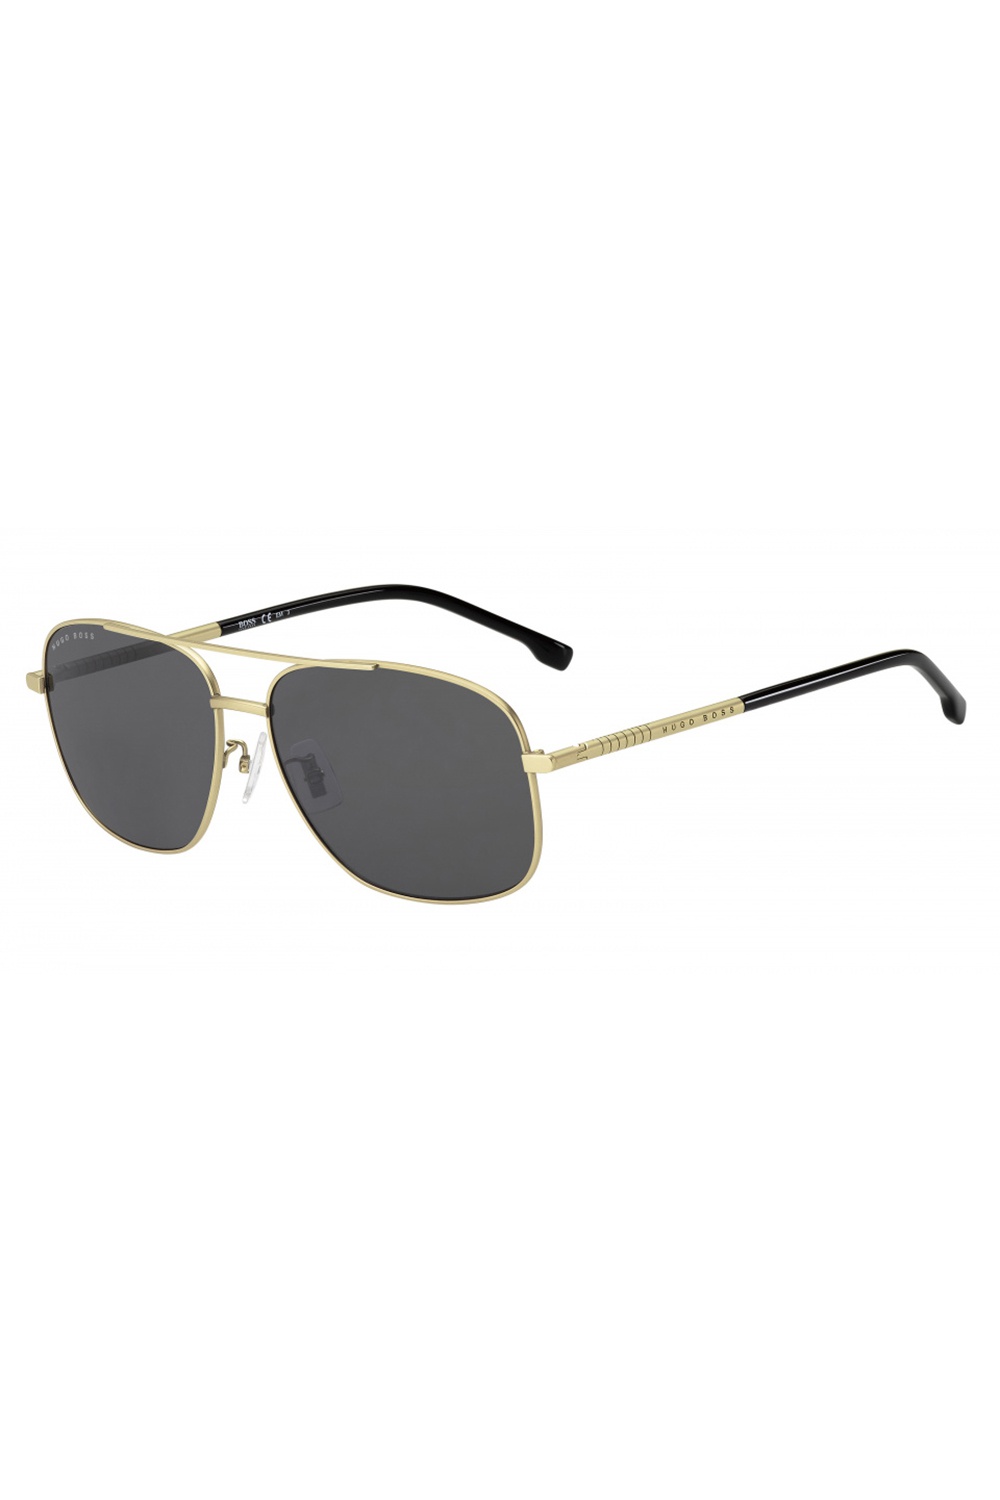 Boss by Hugo Boss Sunglasses UAE | Buy Sunglasses Online